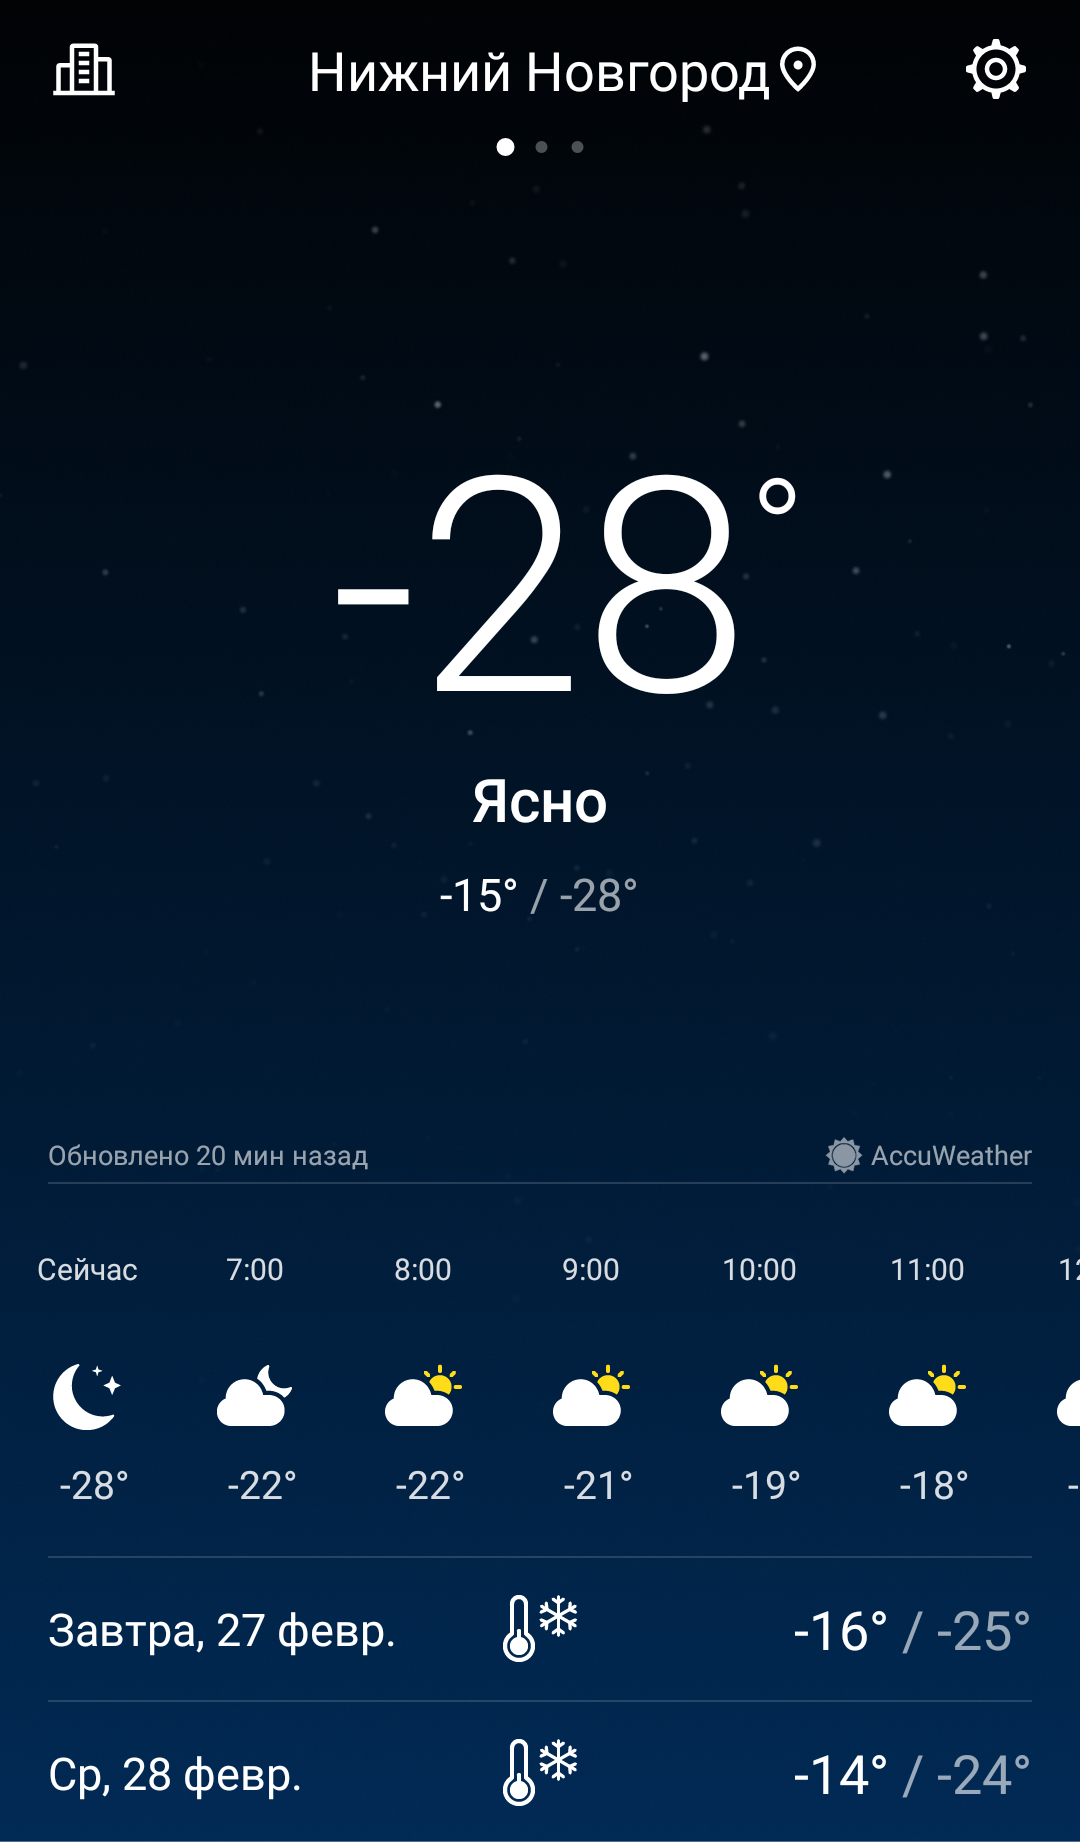 Погода завтра в 12 часов. Погода в Красноярске. Погода в Красноярске на завтра. Погода в Красноярске сегодня. Погода в Красноярске сегодня сейчас.